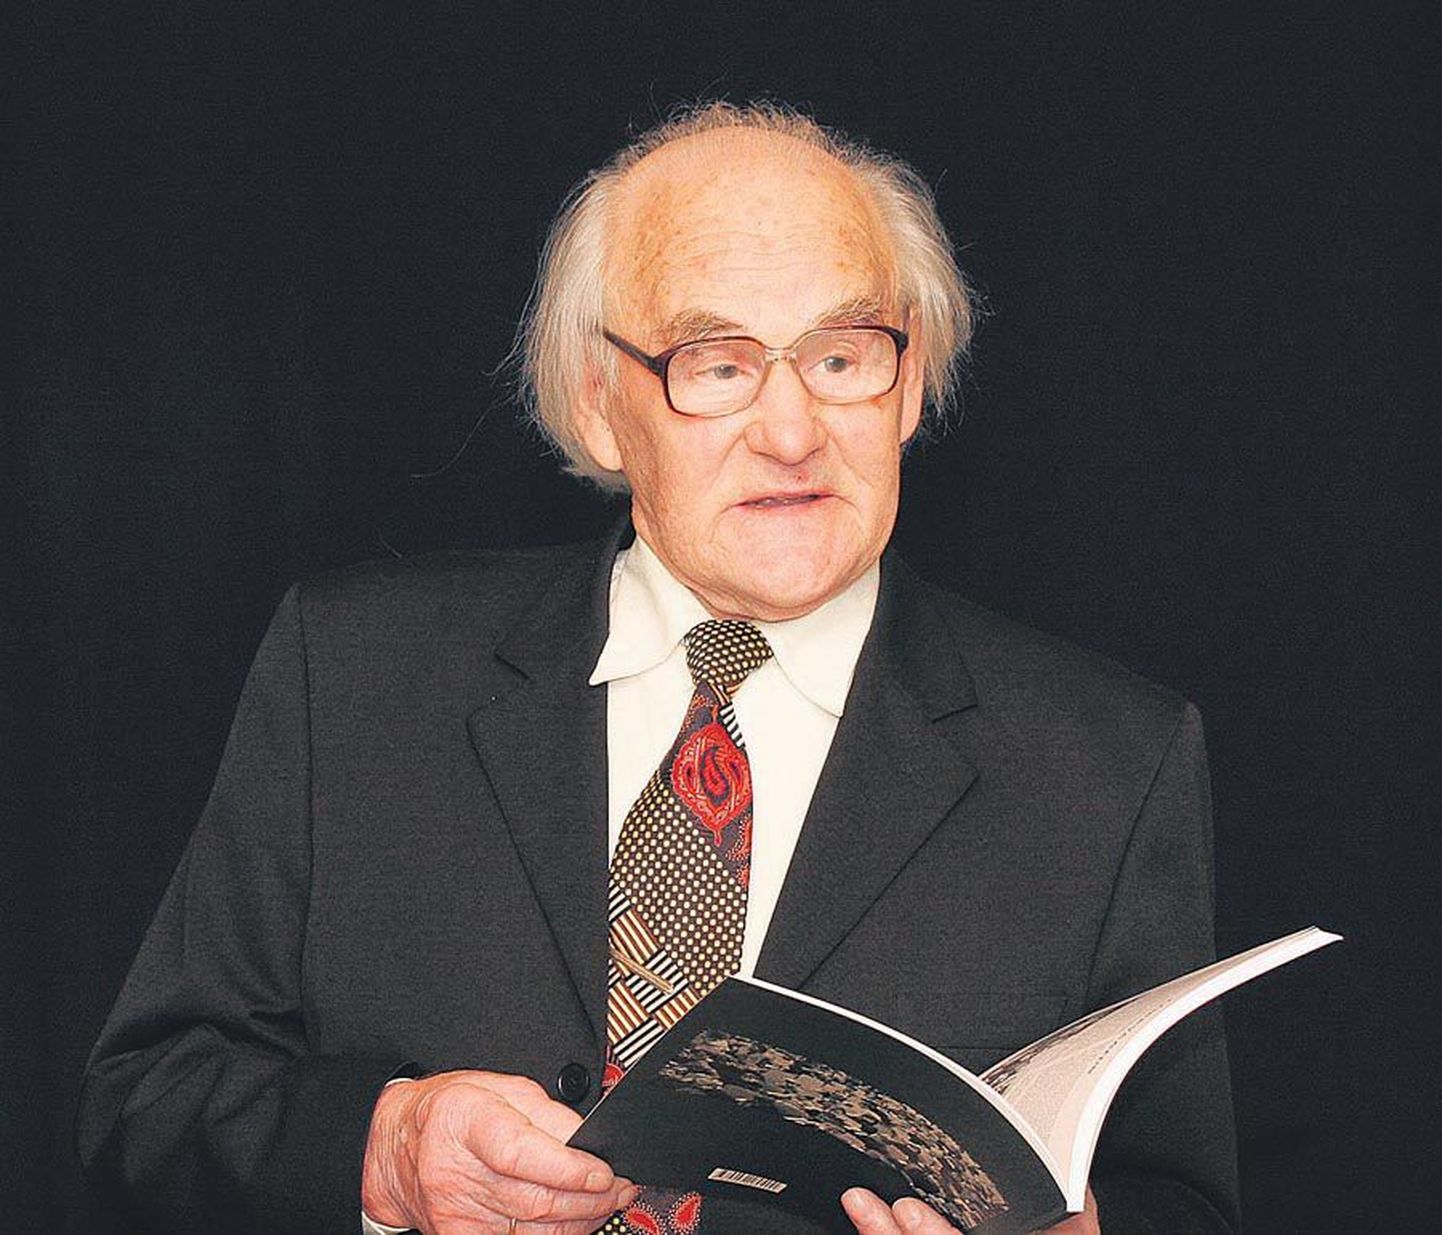 Votele Kuusik tegutses Viljandi nukuteatri juhi ja peamise lavastajana 1977. aastani. Raamatust leiab palju põnevat sellest entusiastlikust tööst.